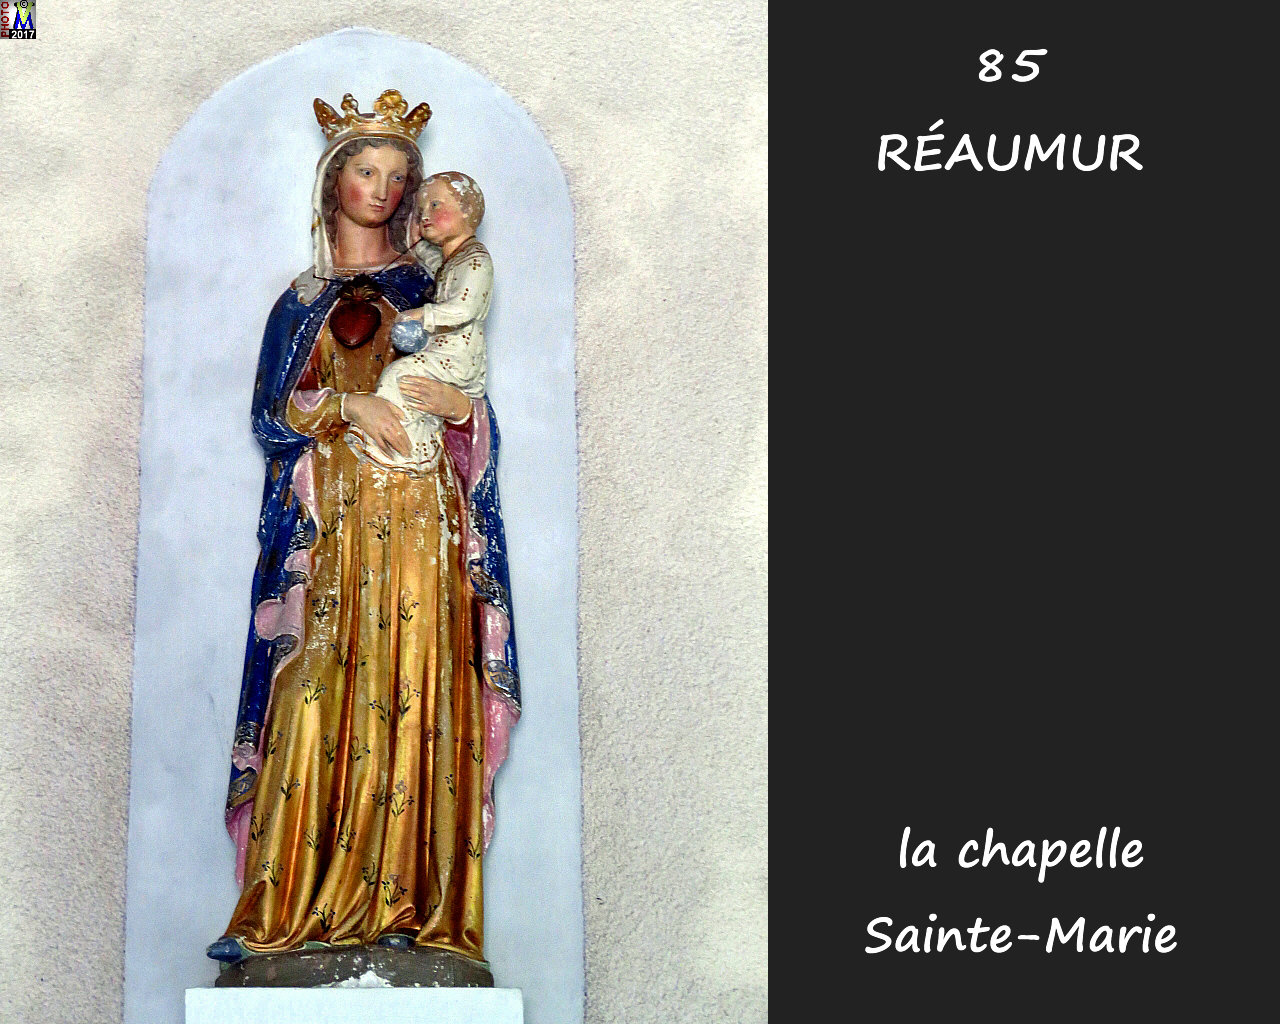 85REAUMUR_chapelle_1140.jpg